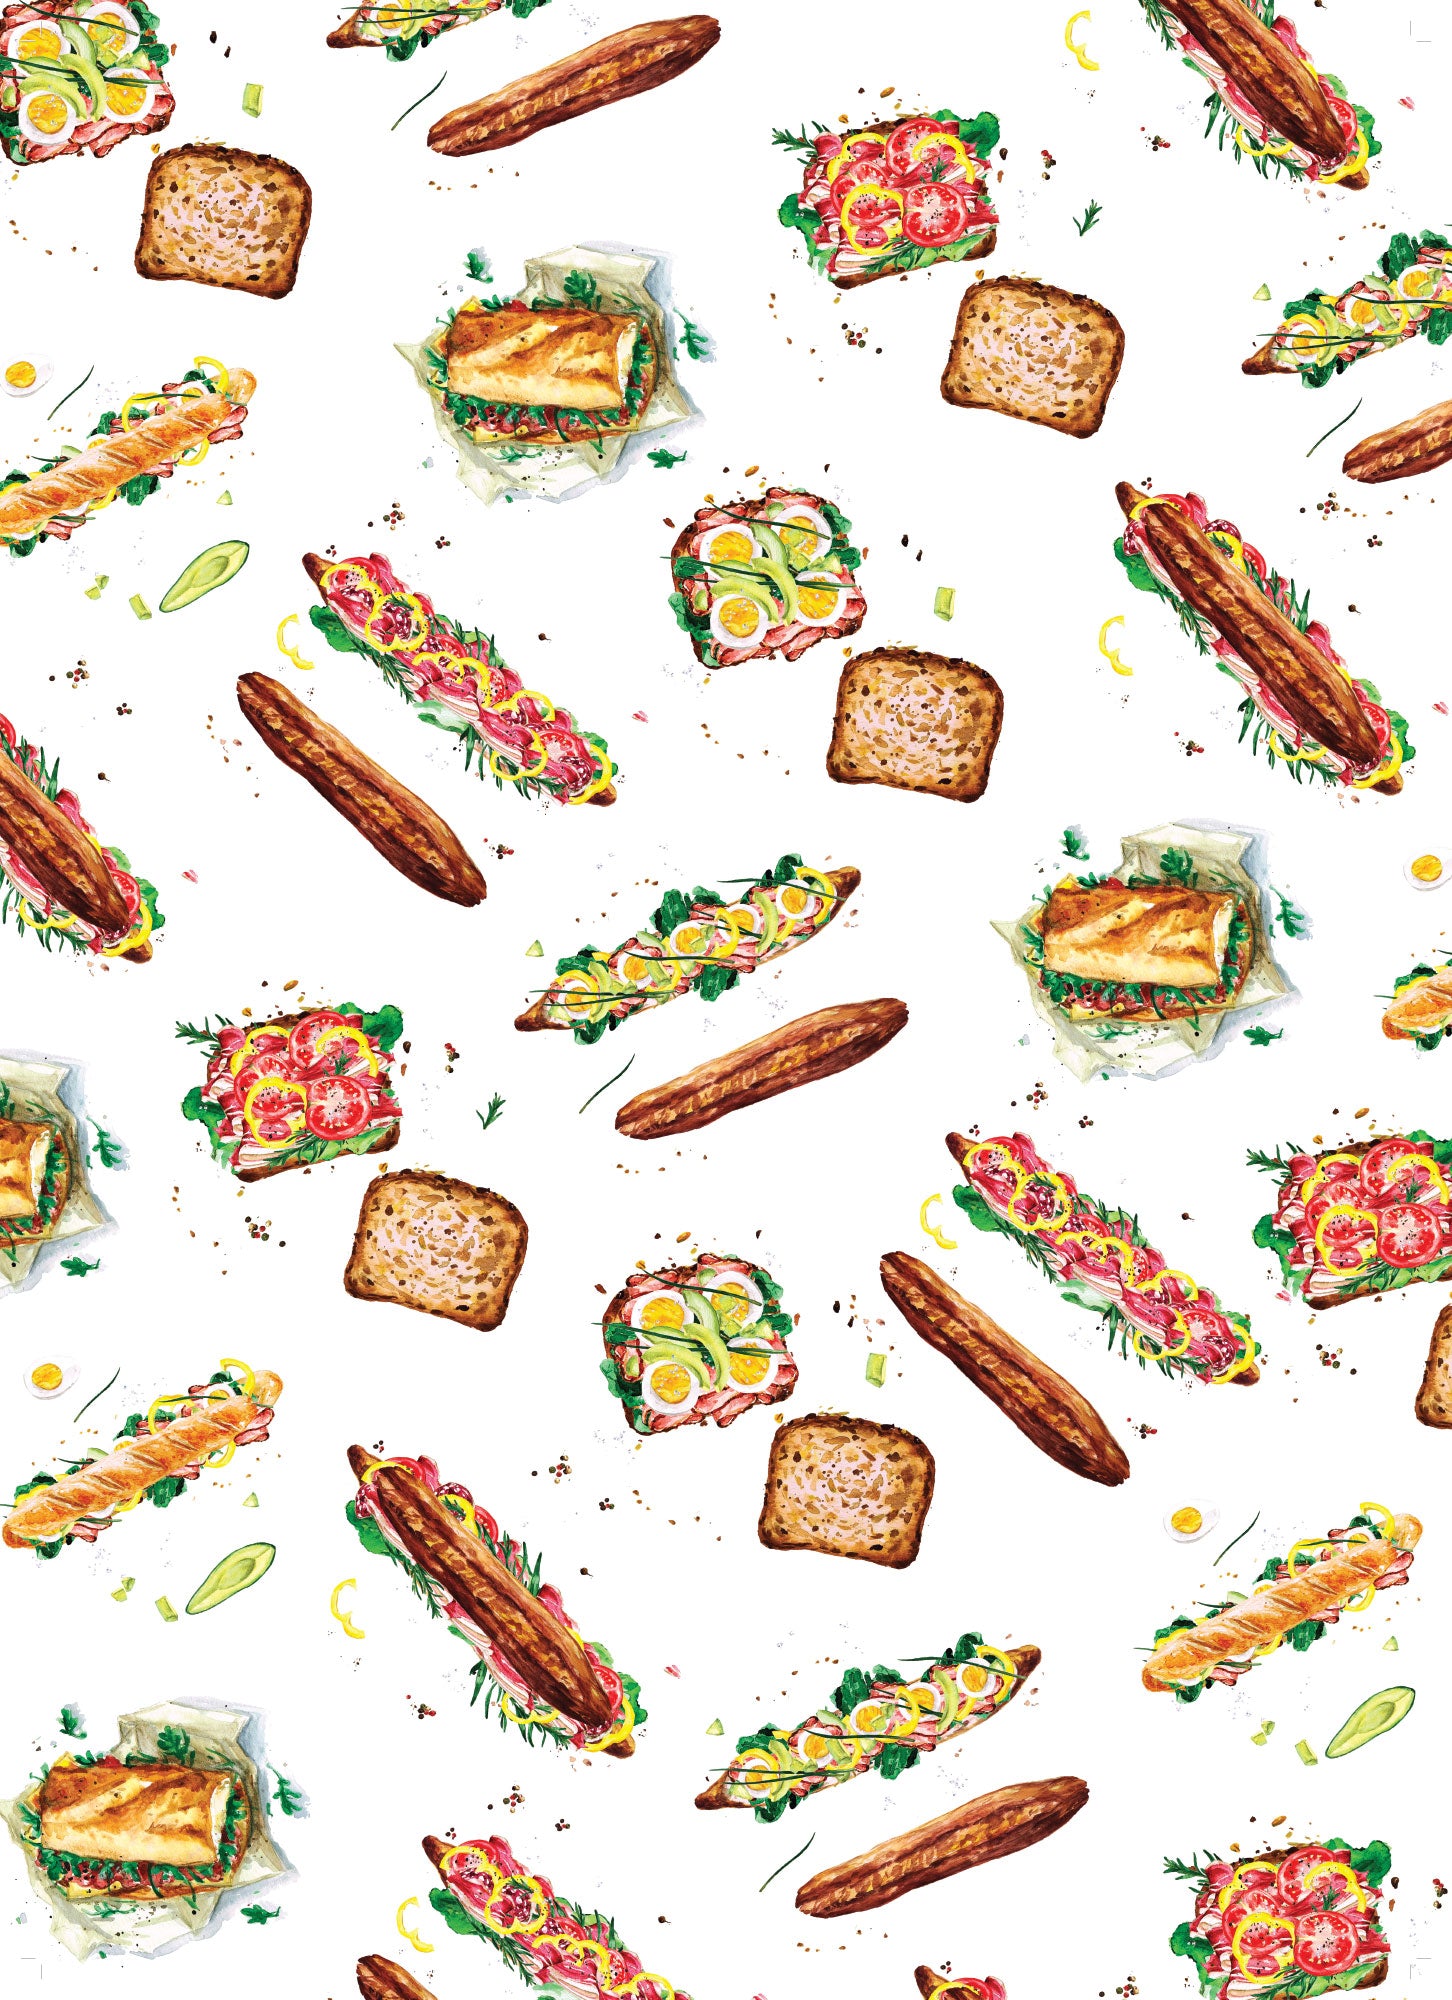 Les Sandwiches - Linge de maison / Kitchen Linen